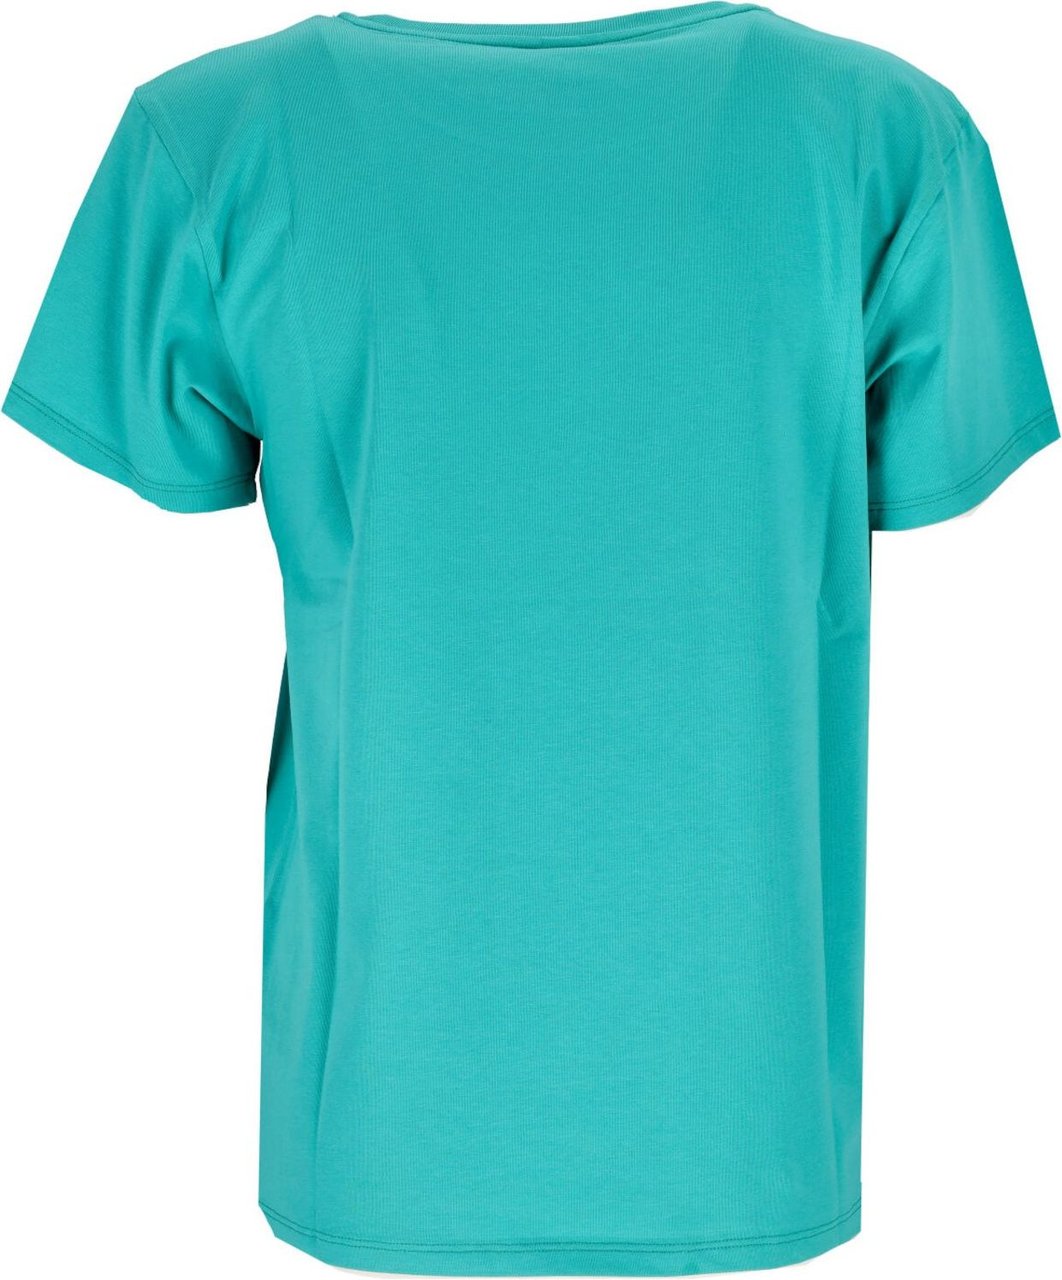 Moschino T-shirt Blauw Blauw